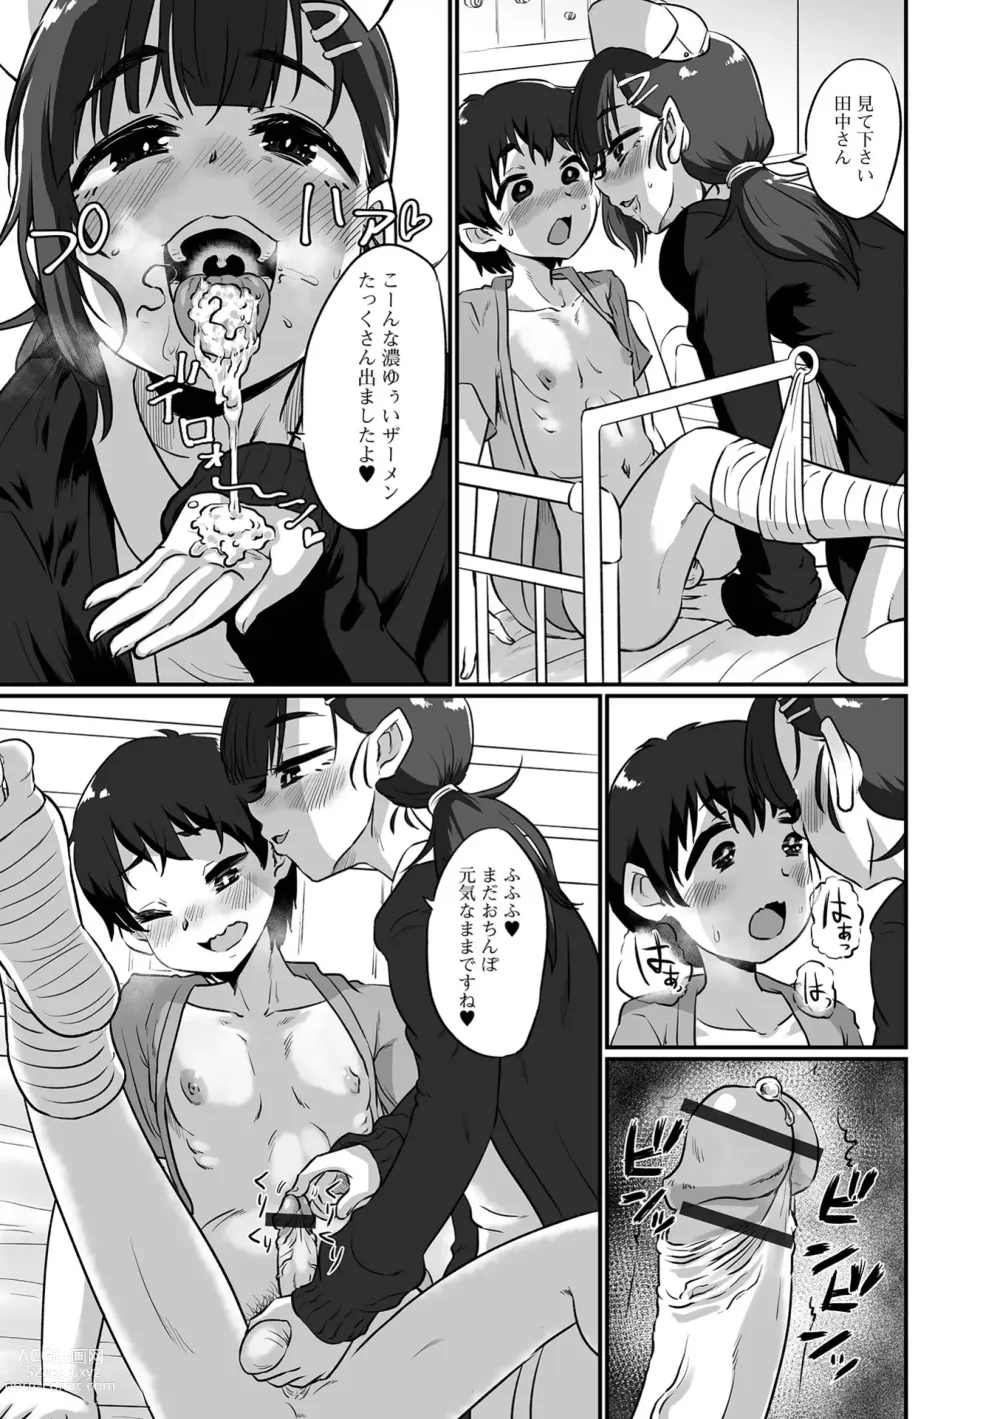 Page 91 of manga Kawaii Otokonoko wa Suki Desuka?